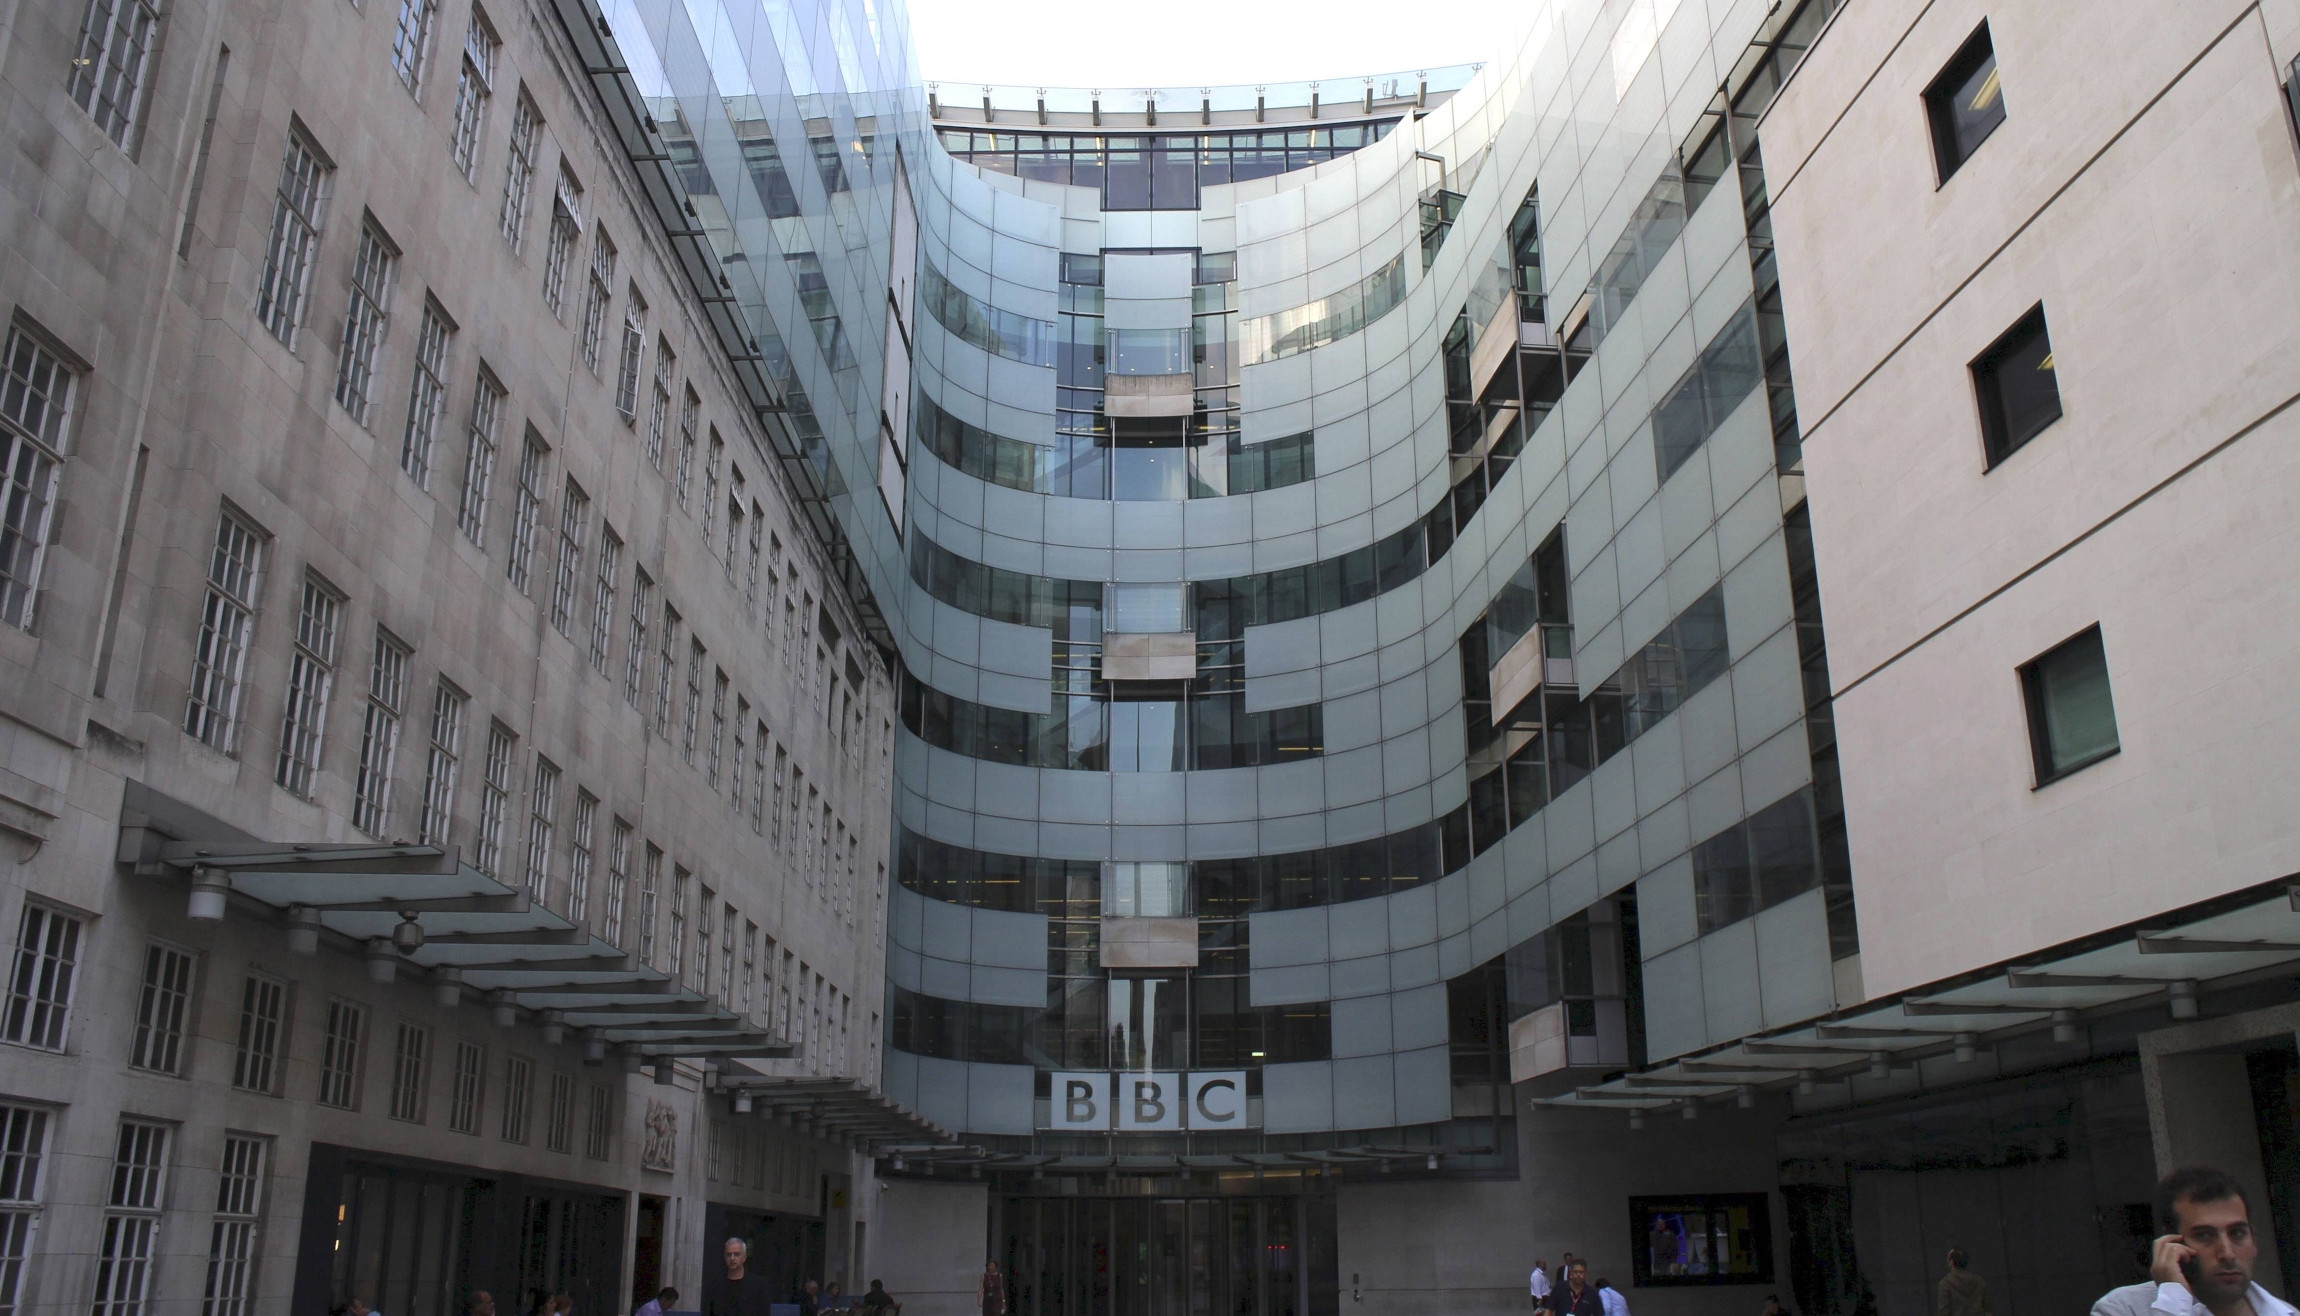 Bis 2022 will BBC 880 Mio. Euro einsparen